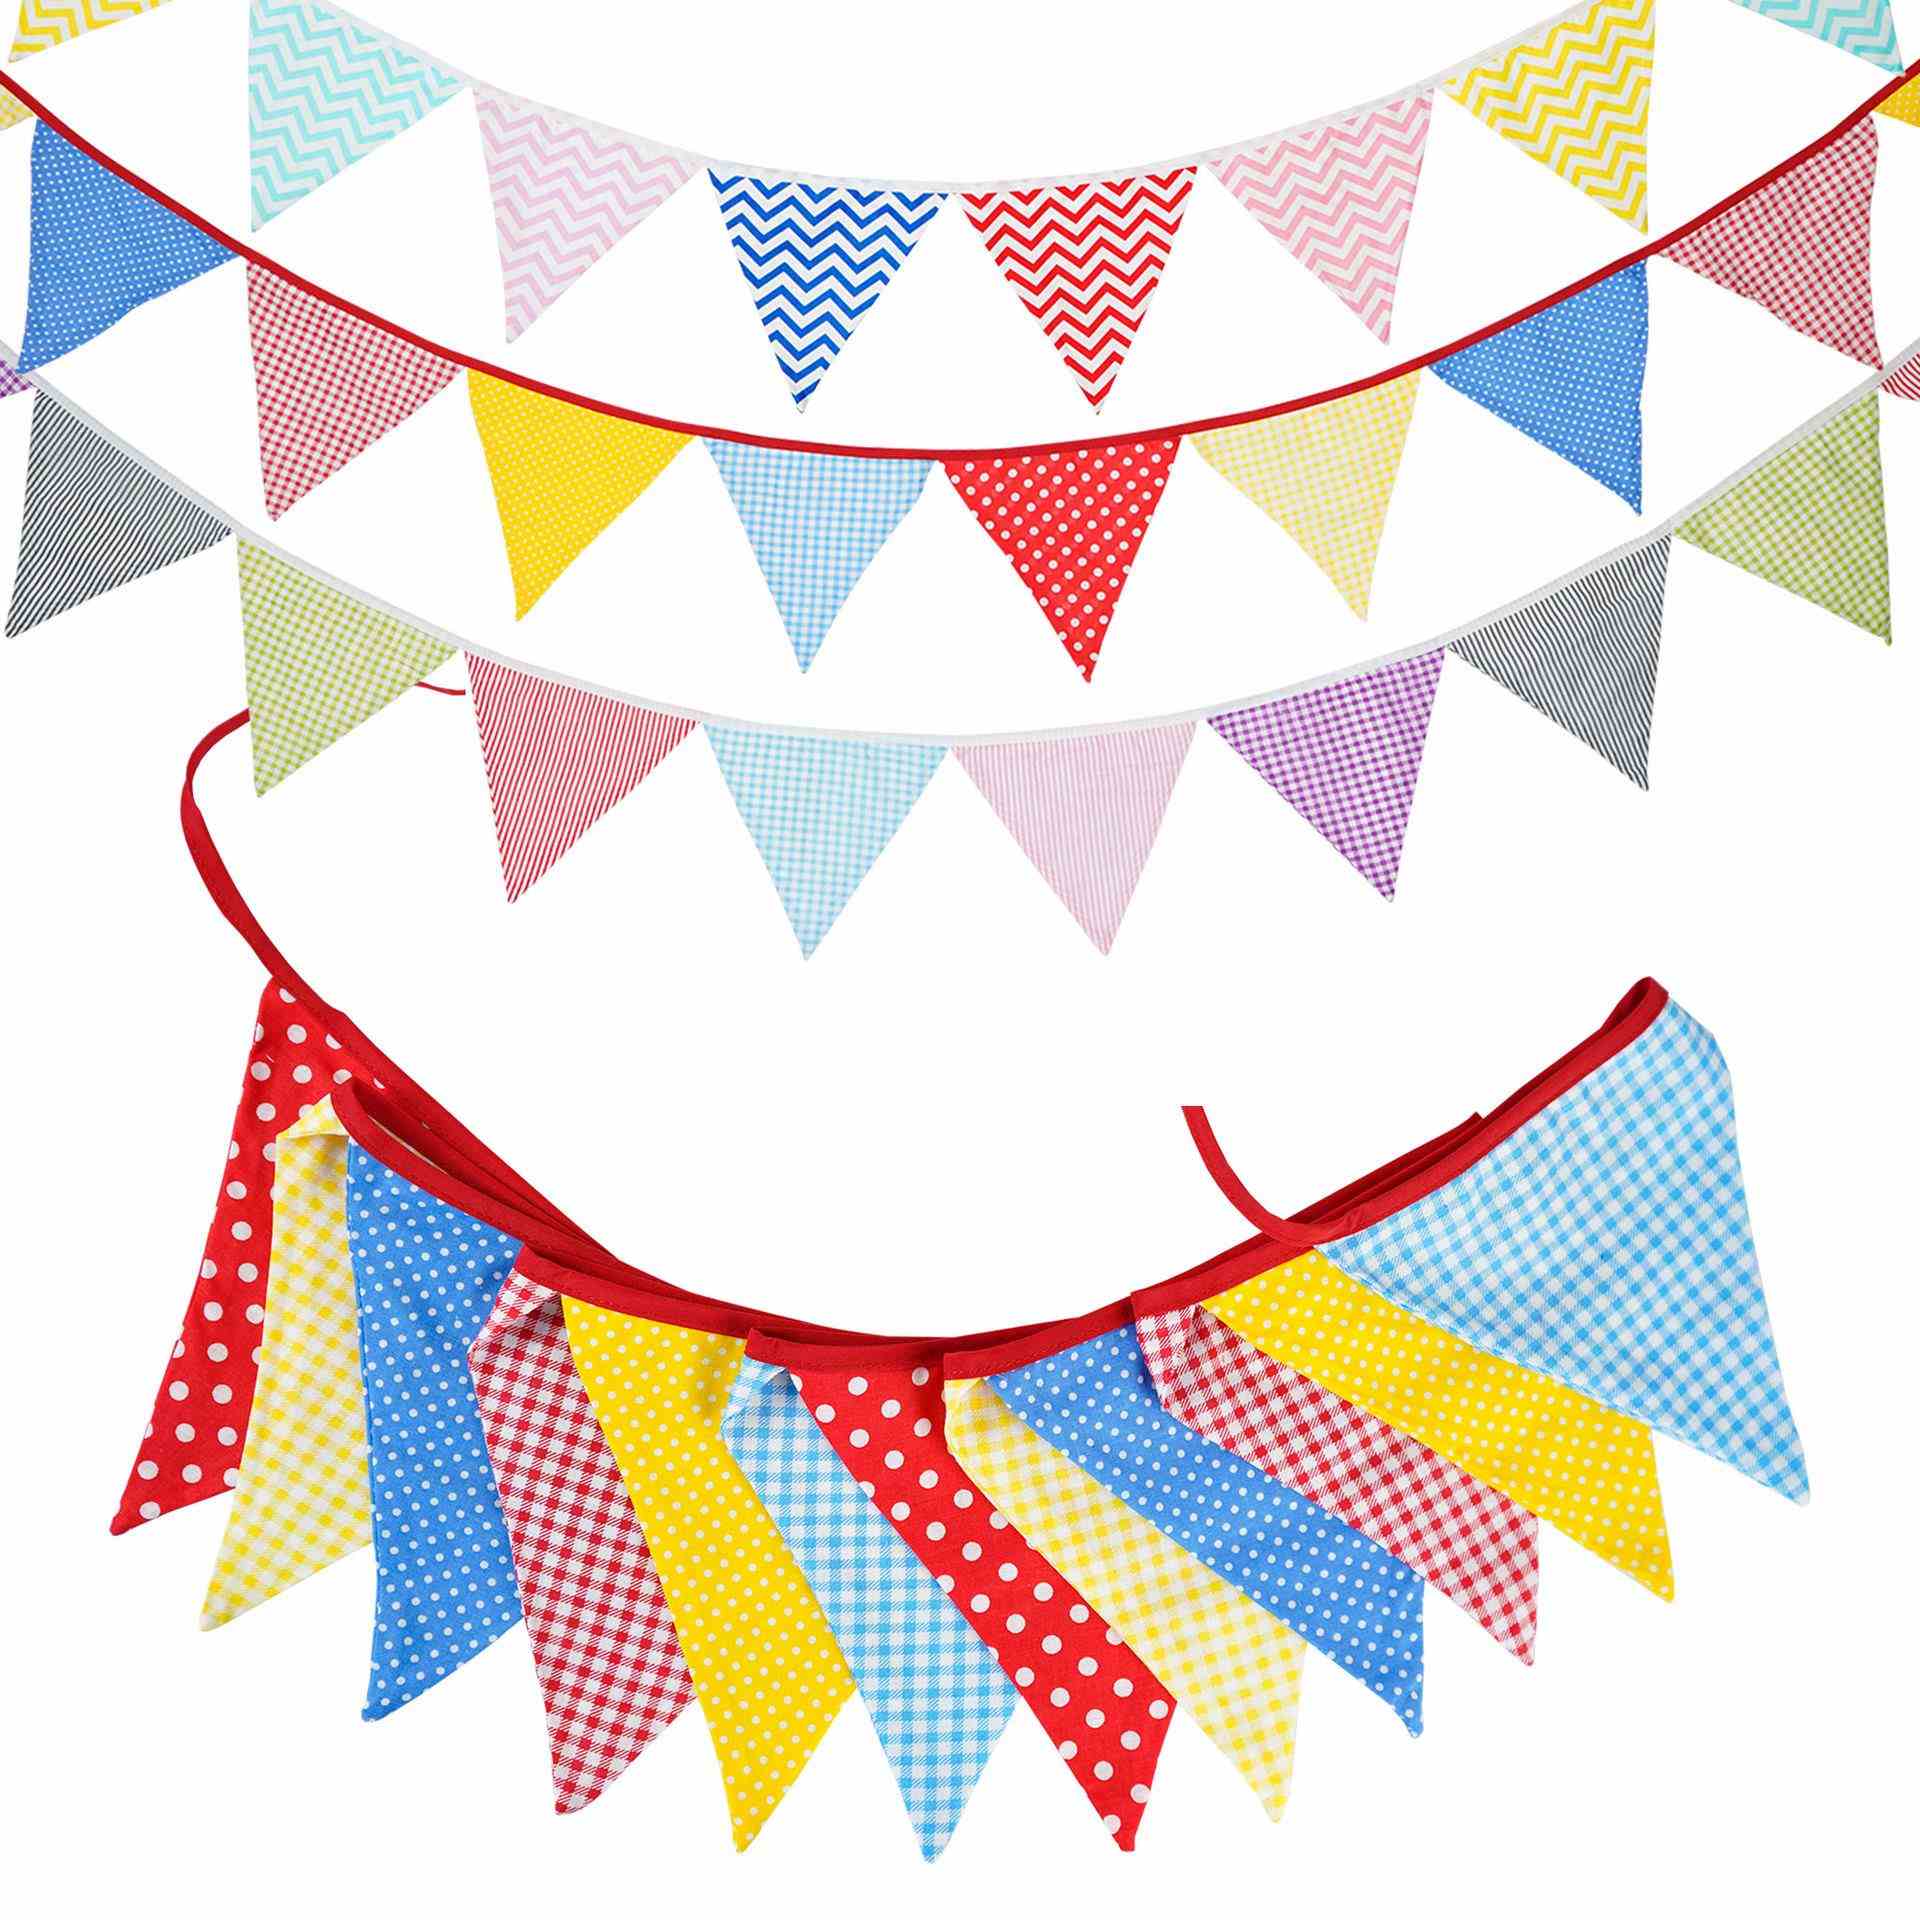 红黄蓝彩色棉布串旗儿童幼儿园生日三角旗婚礼派对挂旗拍照背景